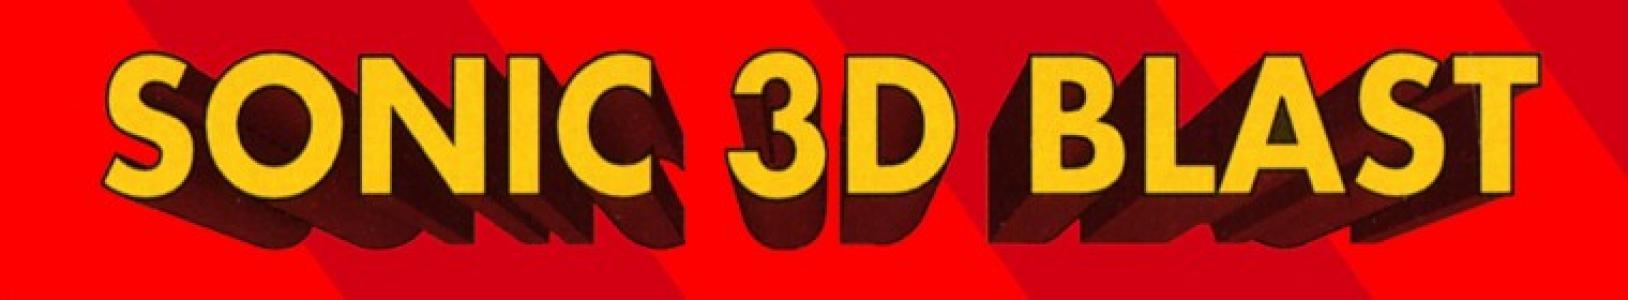 Sonic 3D Blast banner